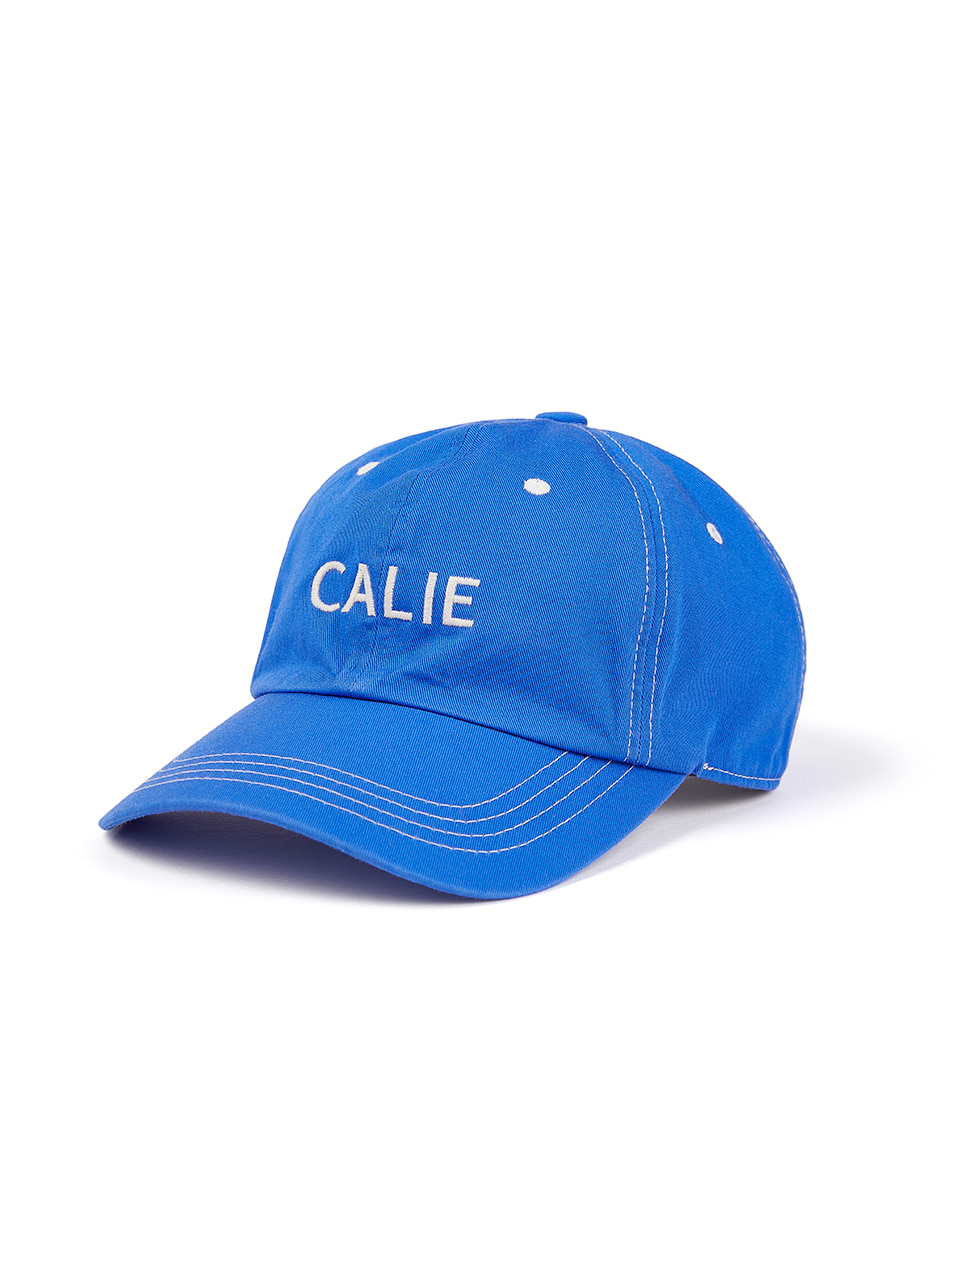 CALIE STITCH BALL CAP BLUE - asif_Calie